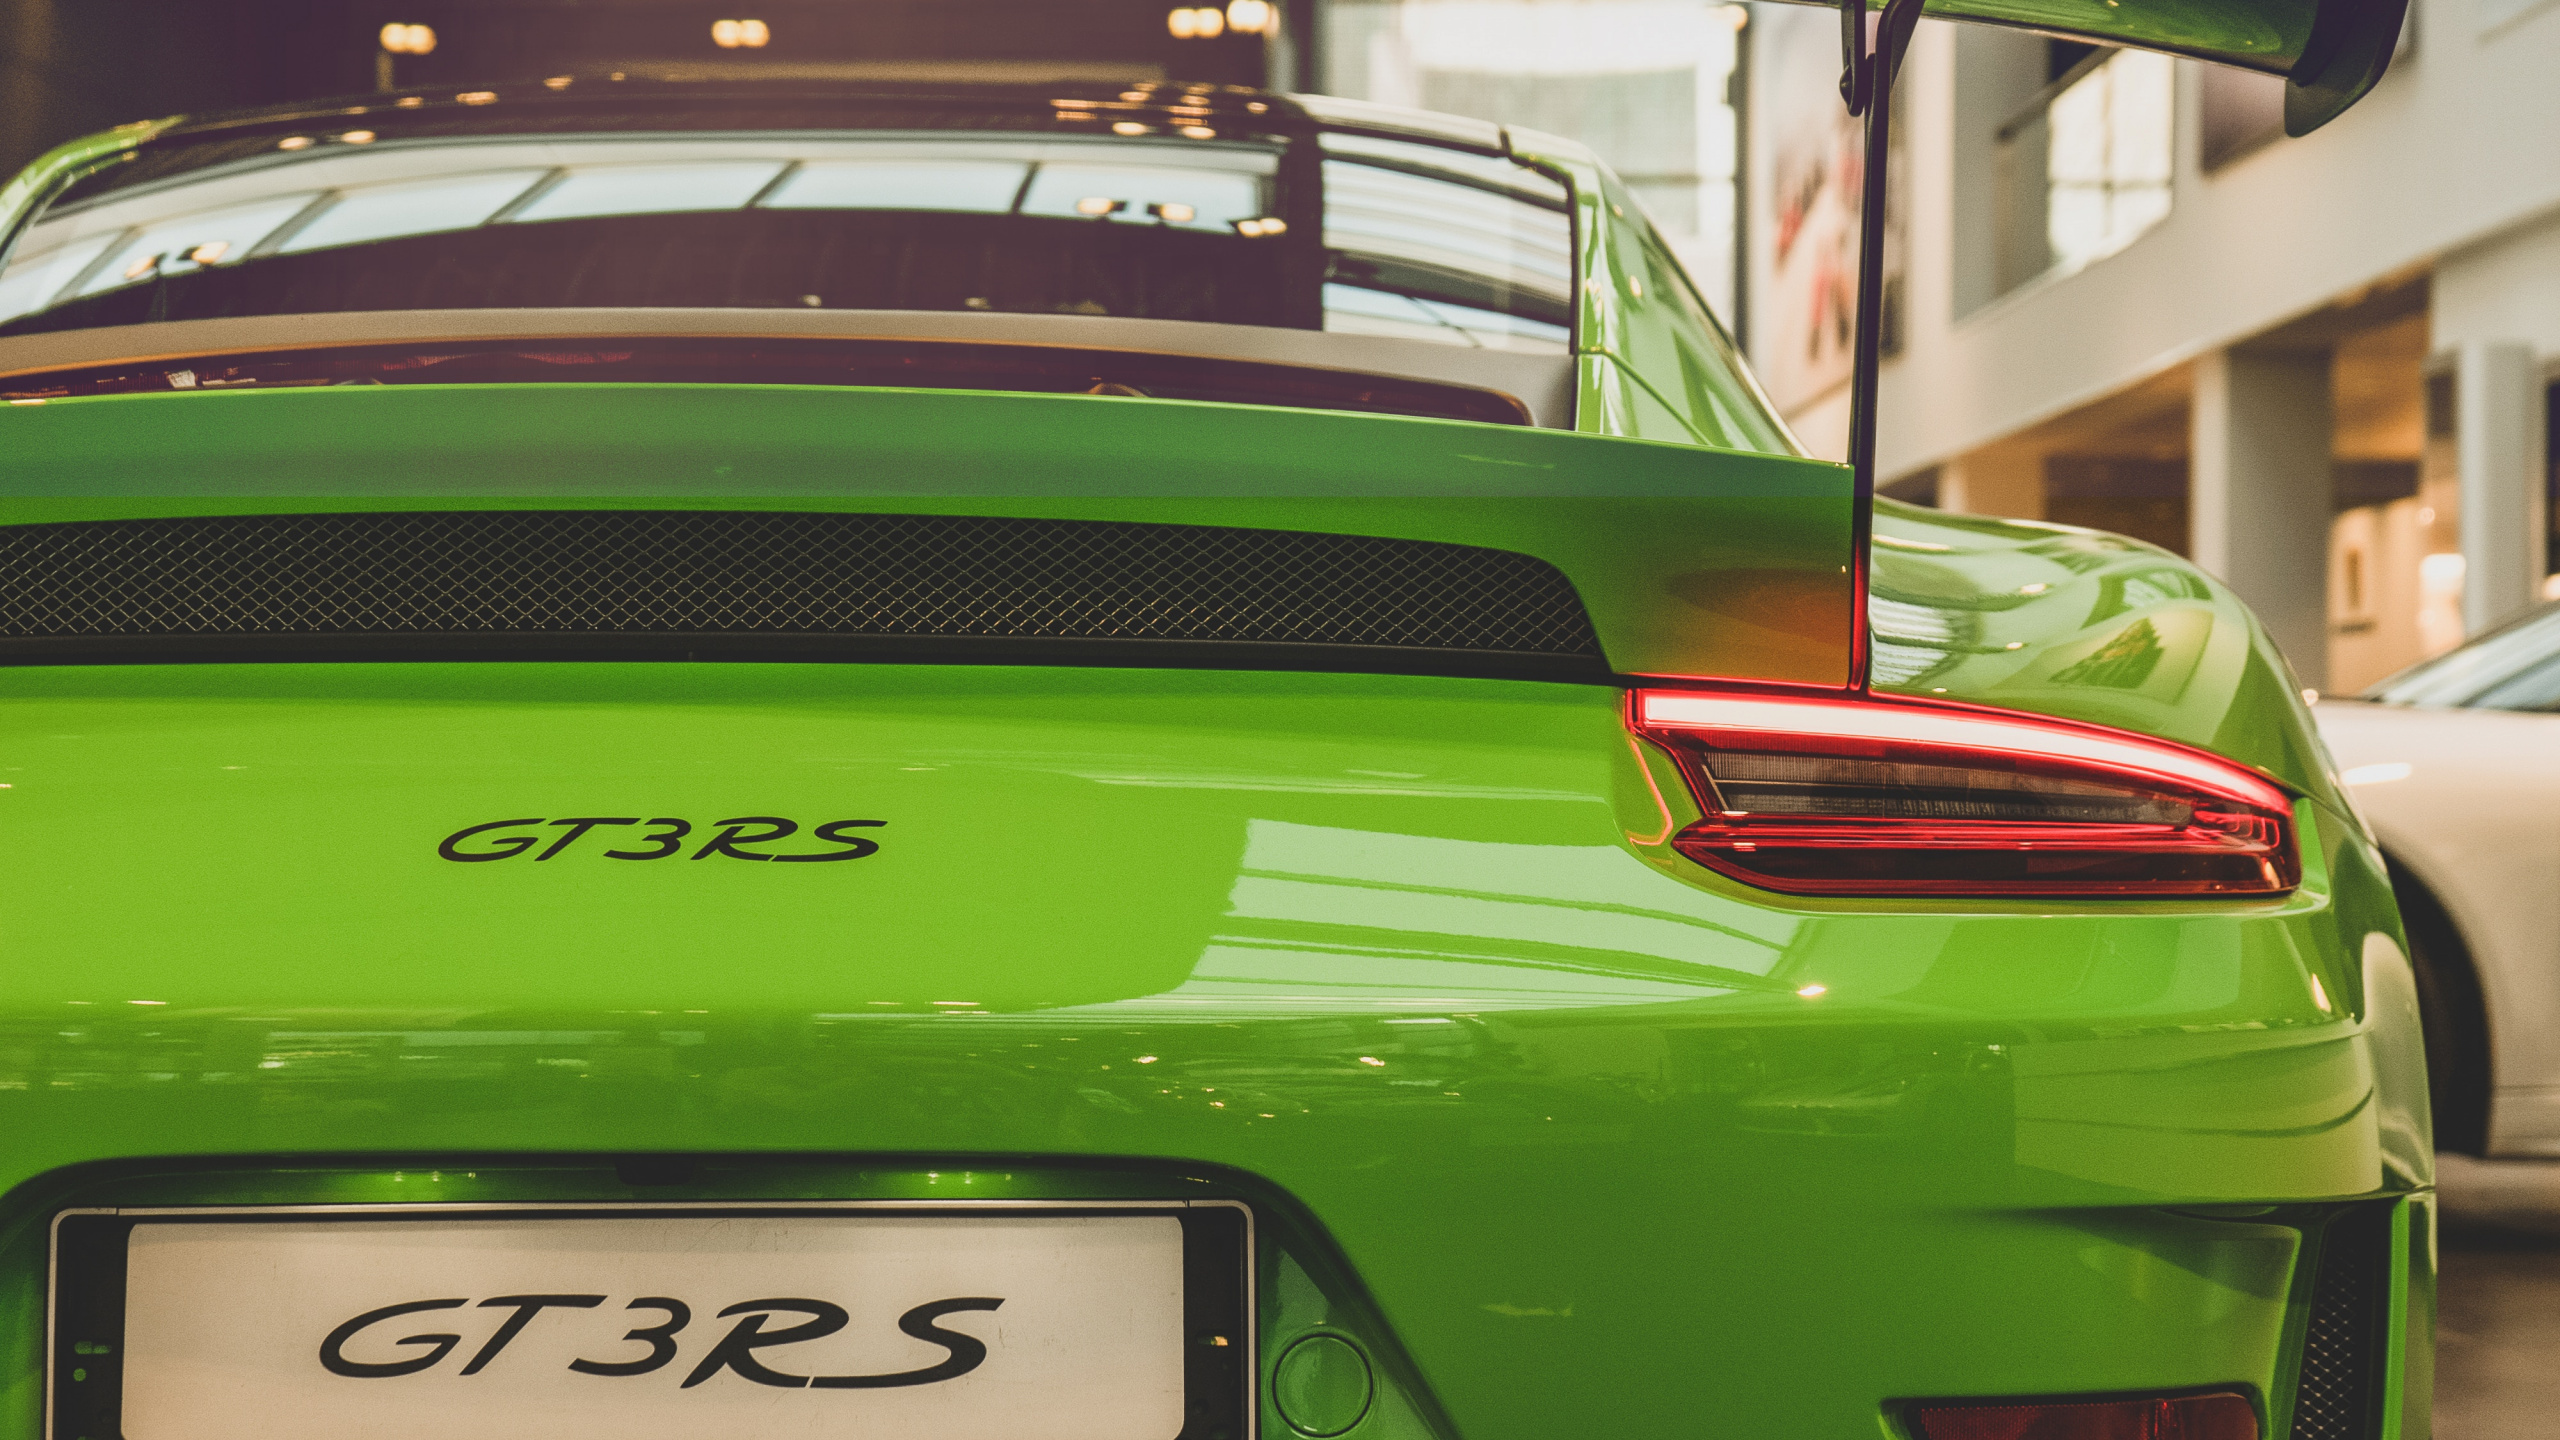 Porsche 911 Verde Estacionado Frente al Edificio. Wallpaper in 2560x1440 Resolution